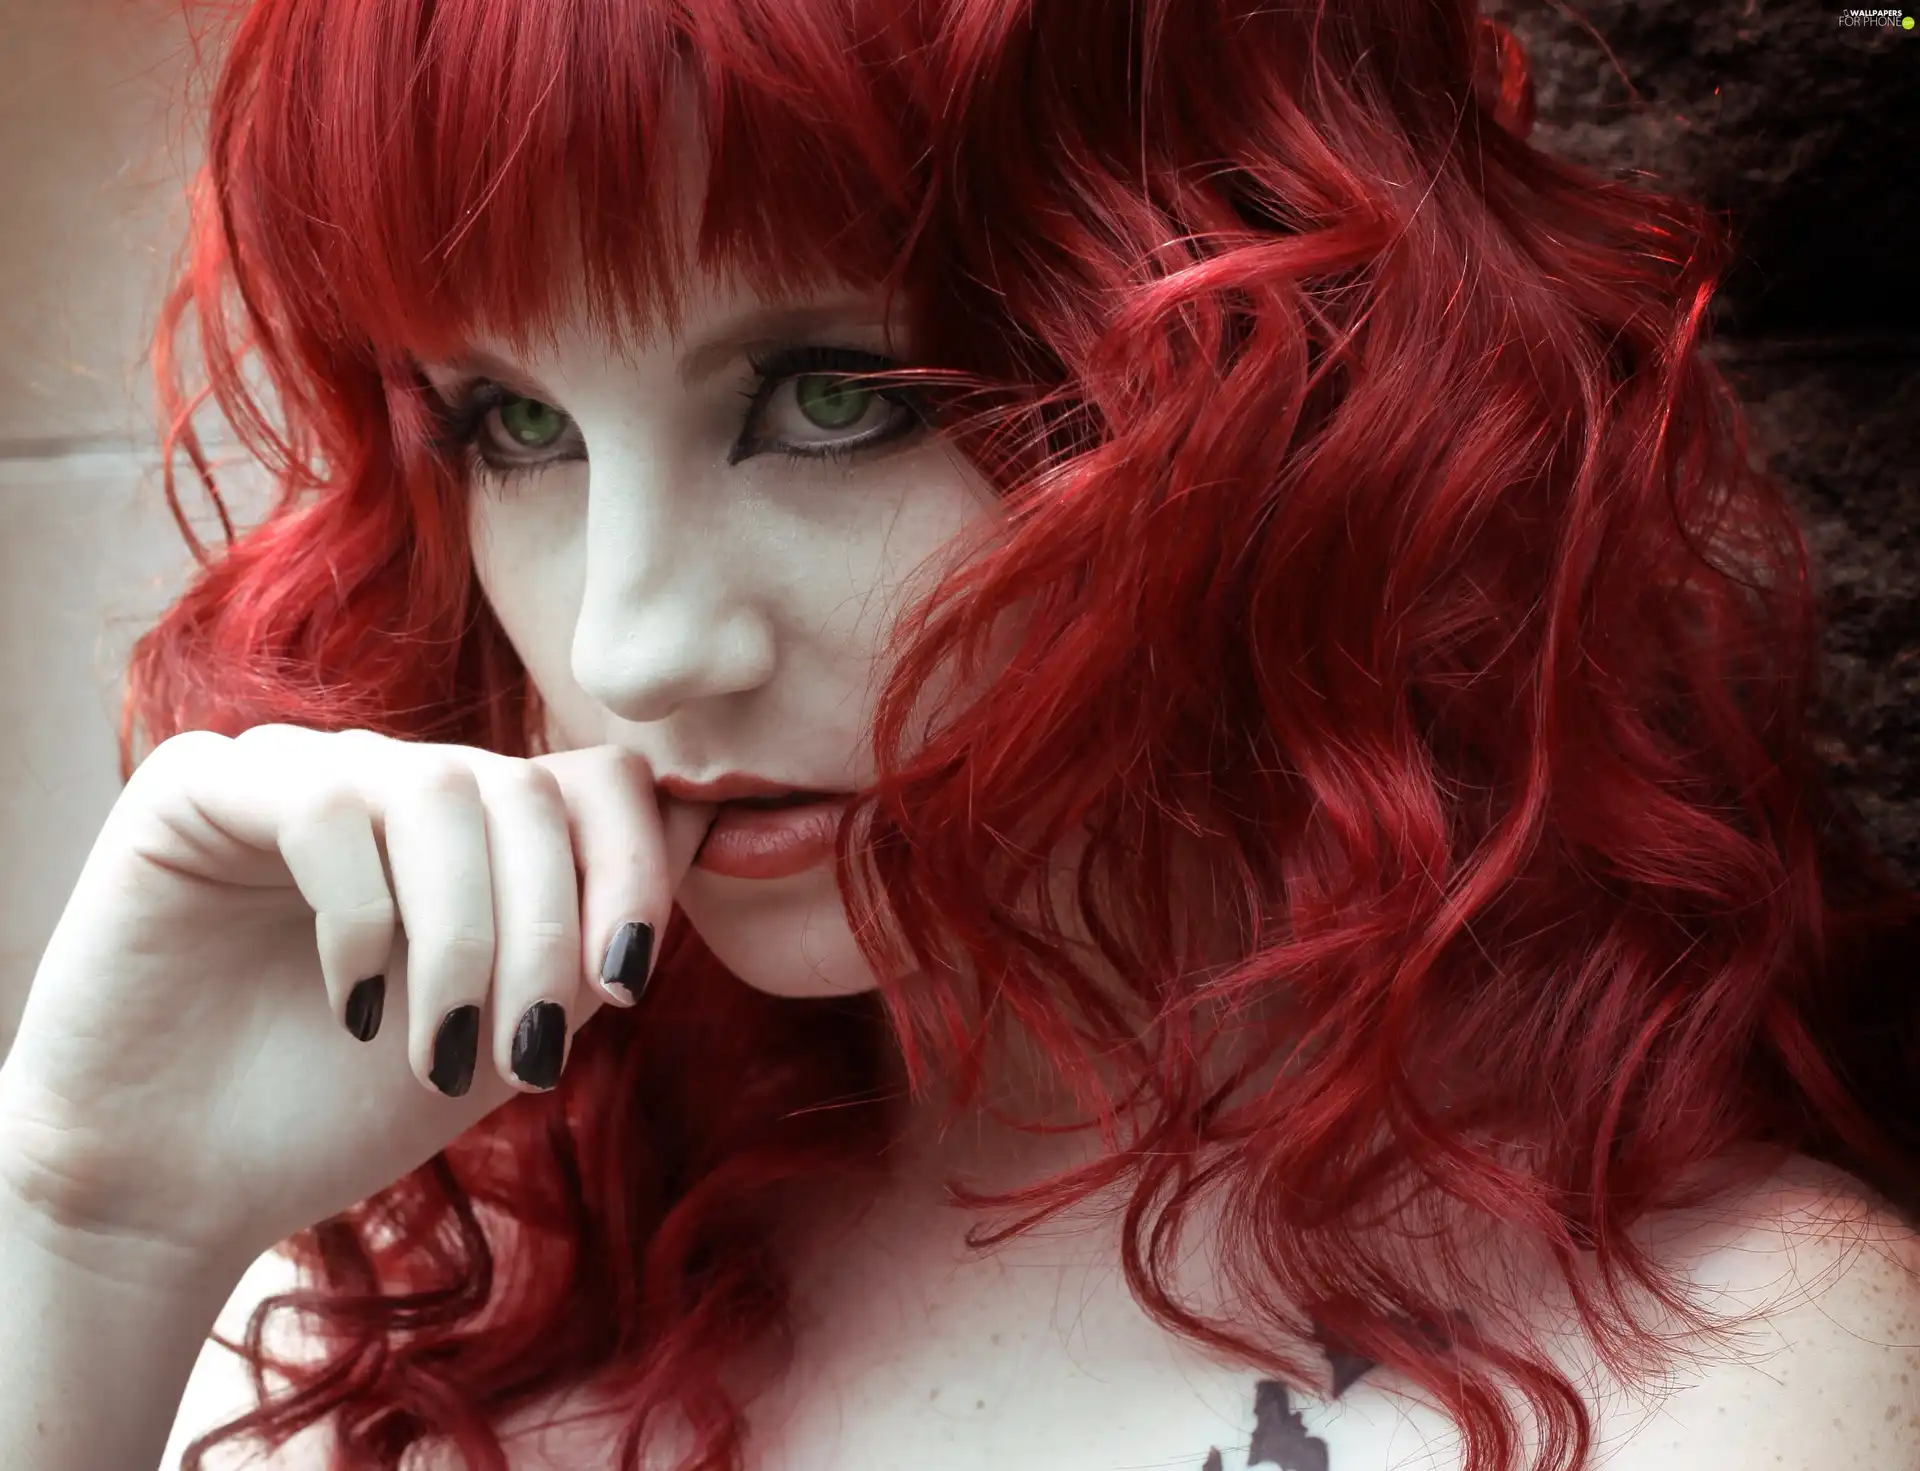 Hair, girl, Red